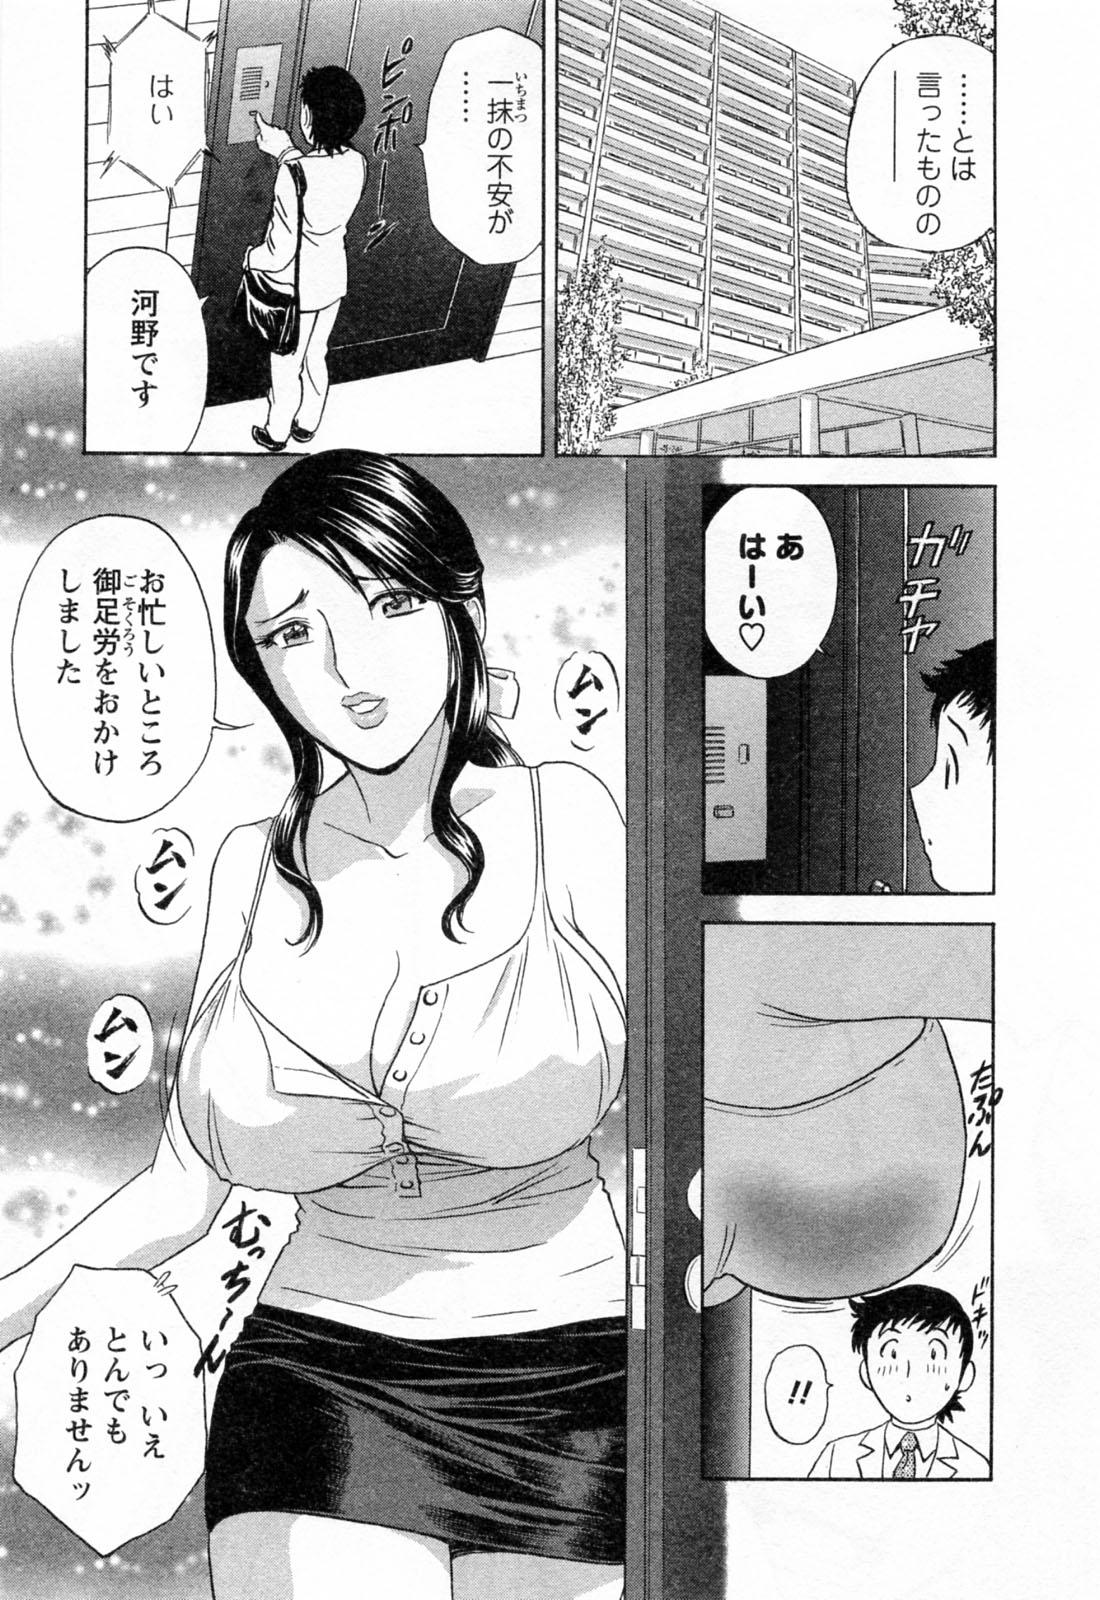 [Hidemaru] Mo-Retsu! Boin Sensei (Boing Boing Teacher) Vol.4 58